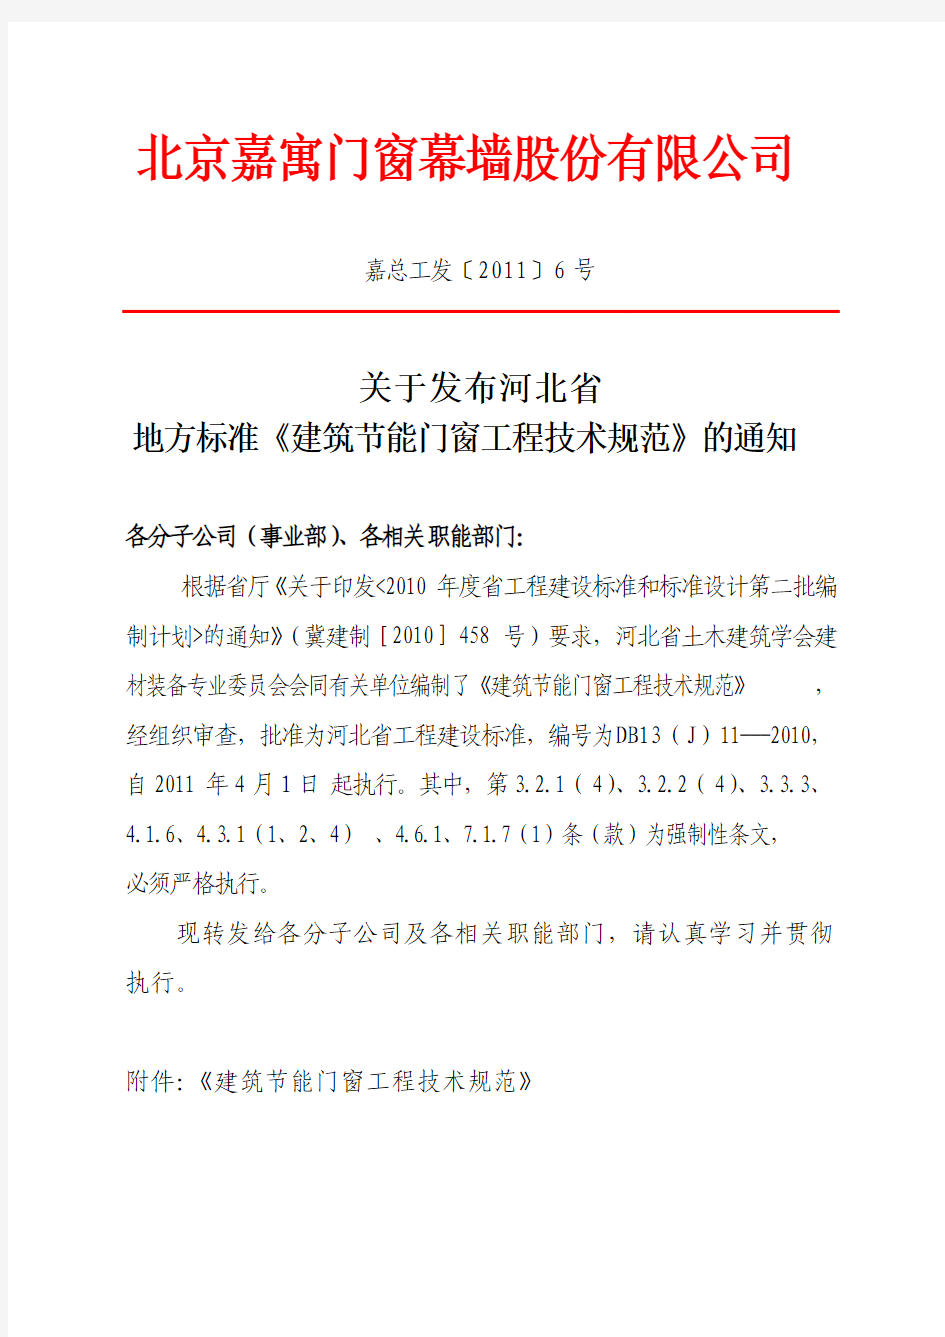 6.发布河北省地方标准《建筑节能门窗工程技术规范》